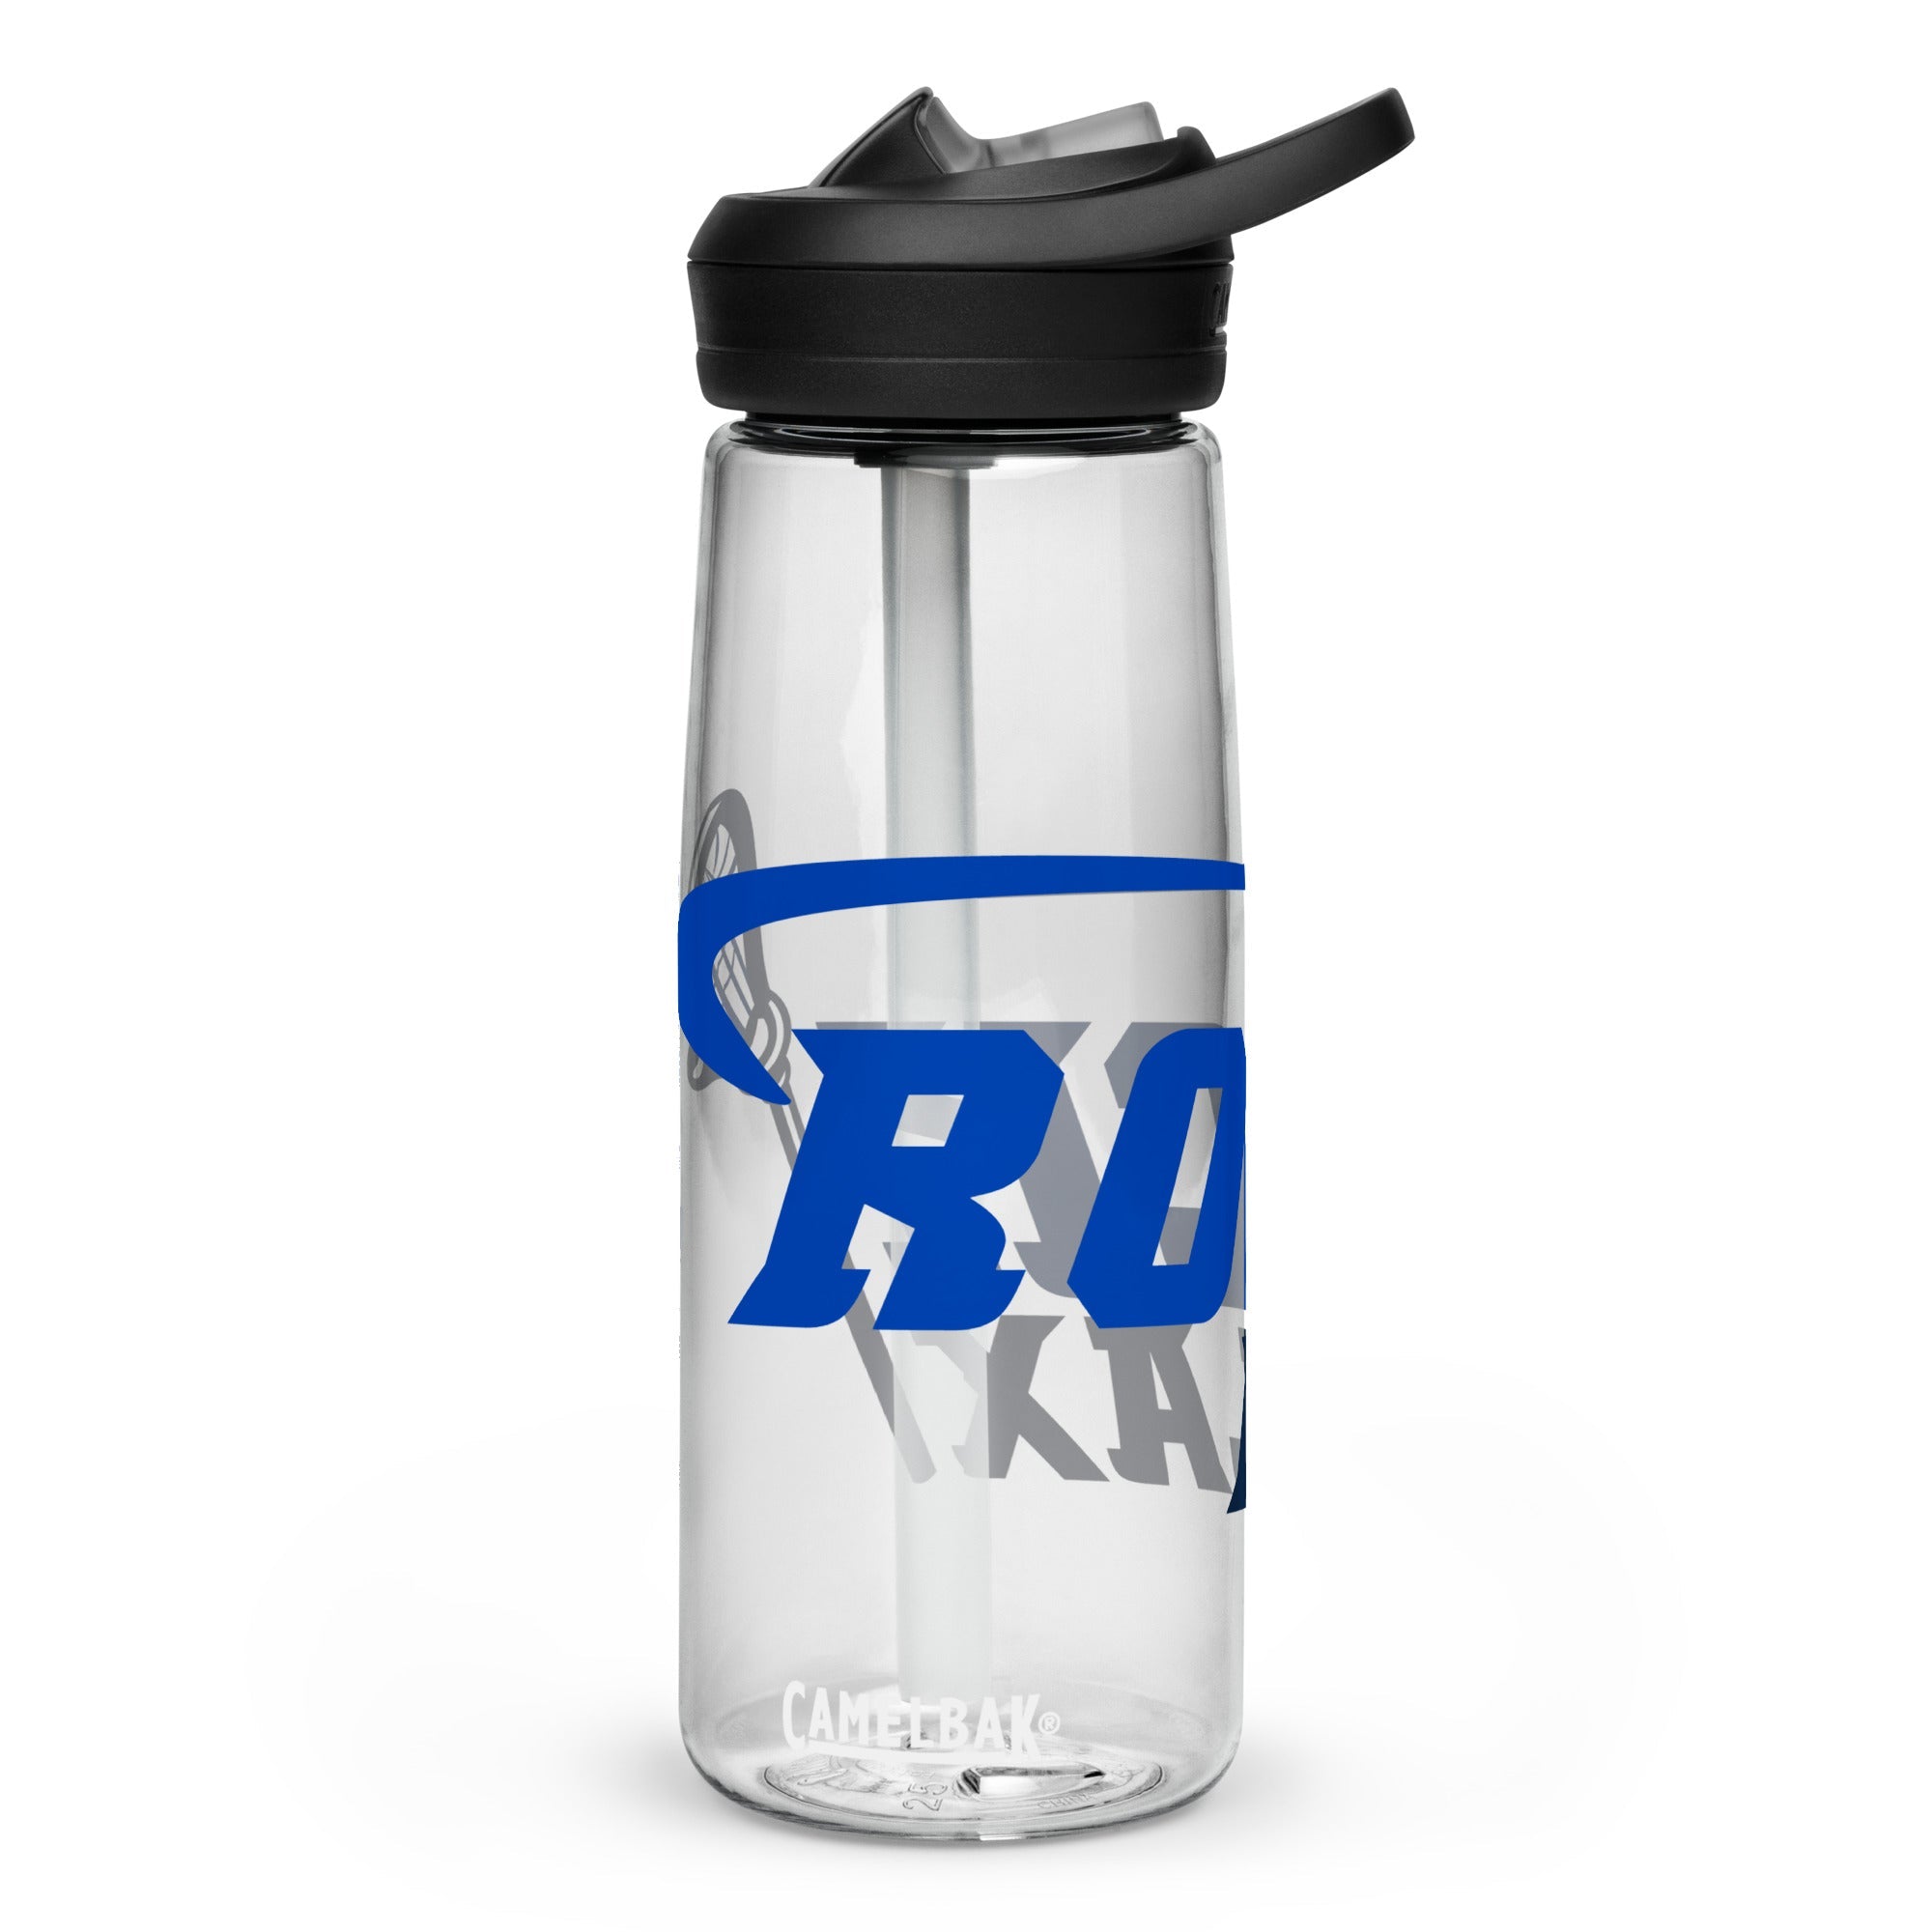 CRL - Sports water bottle